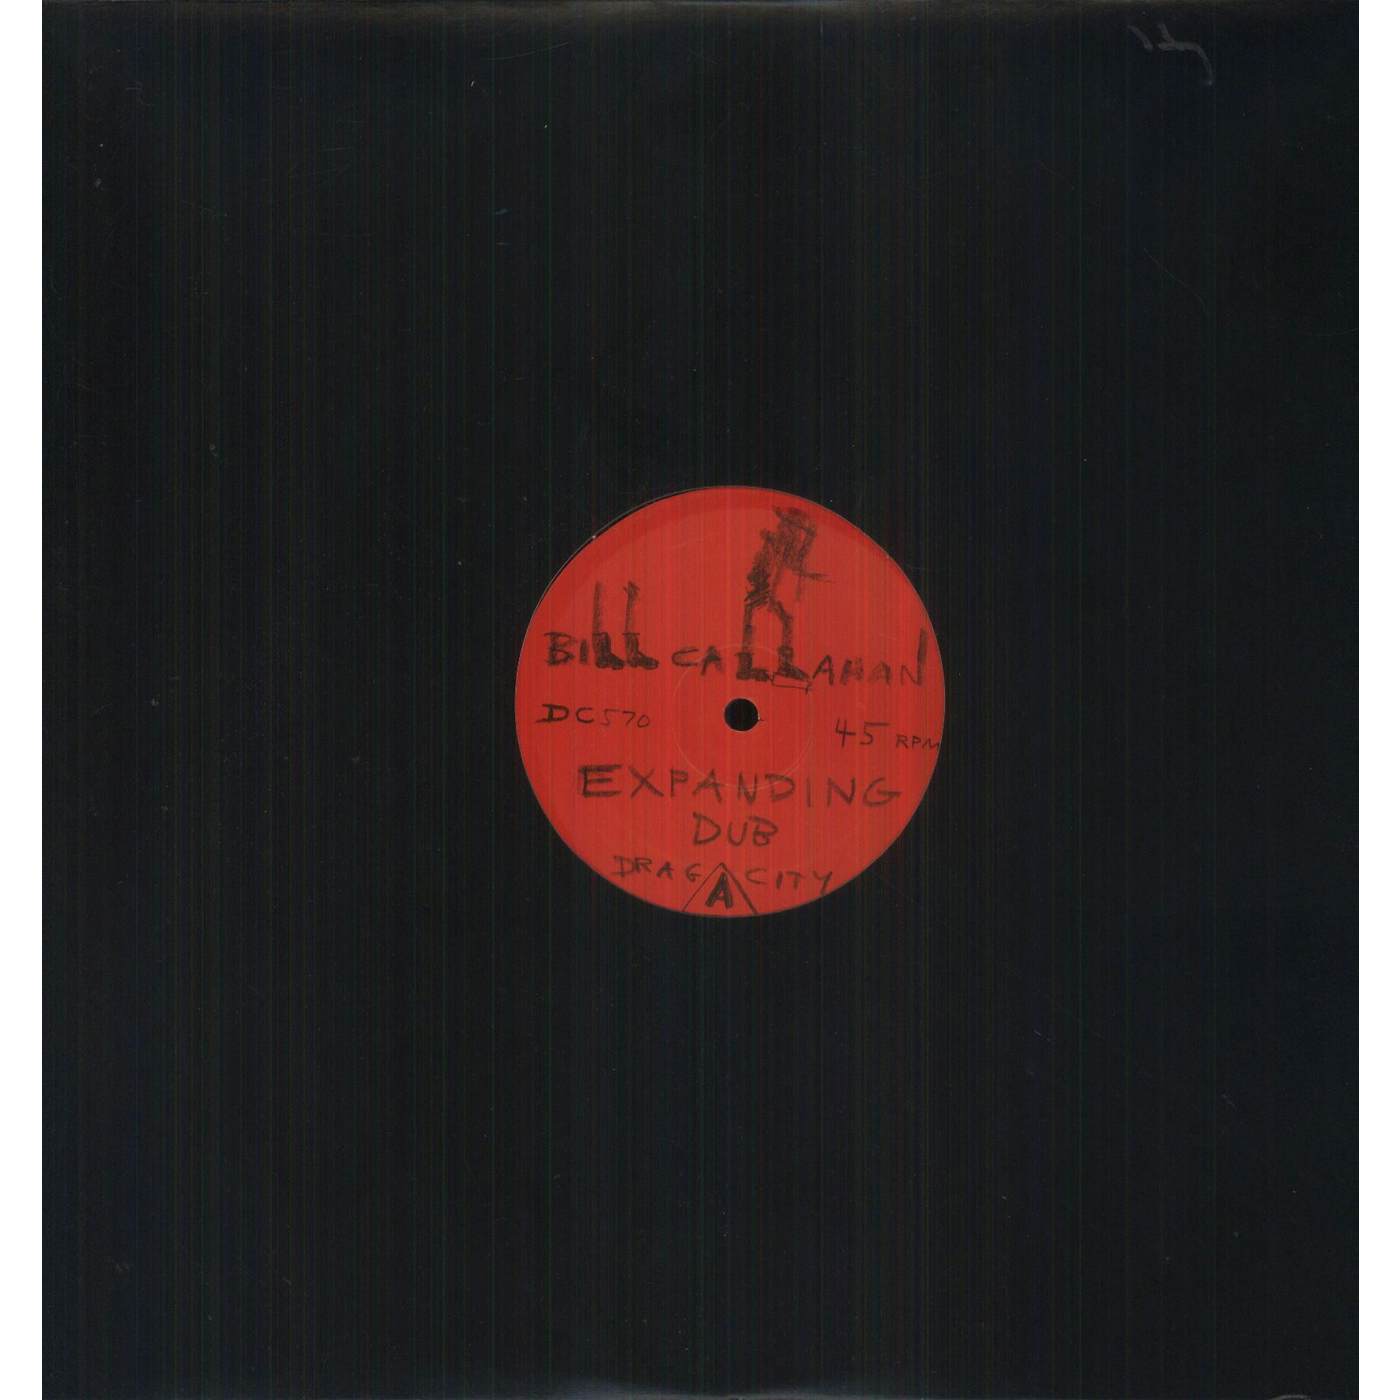 Bill Callahan EXPANDING DUB Vinyl Record